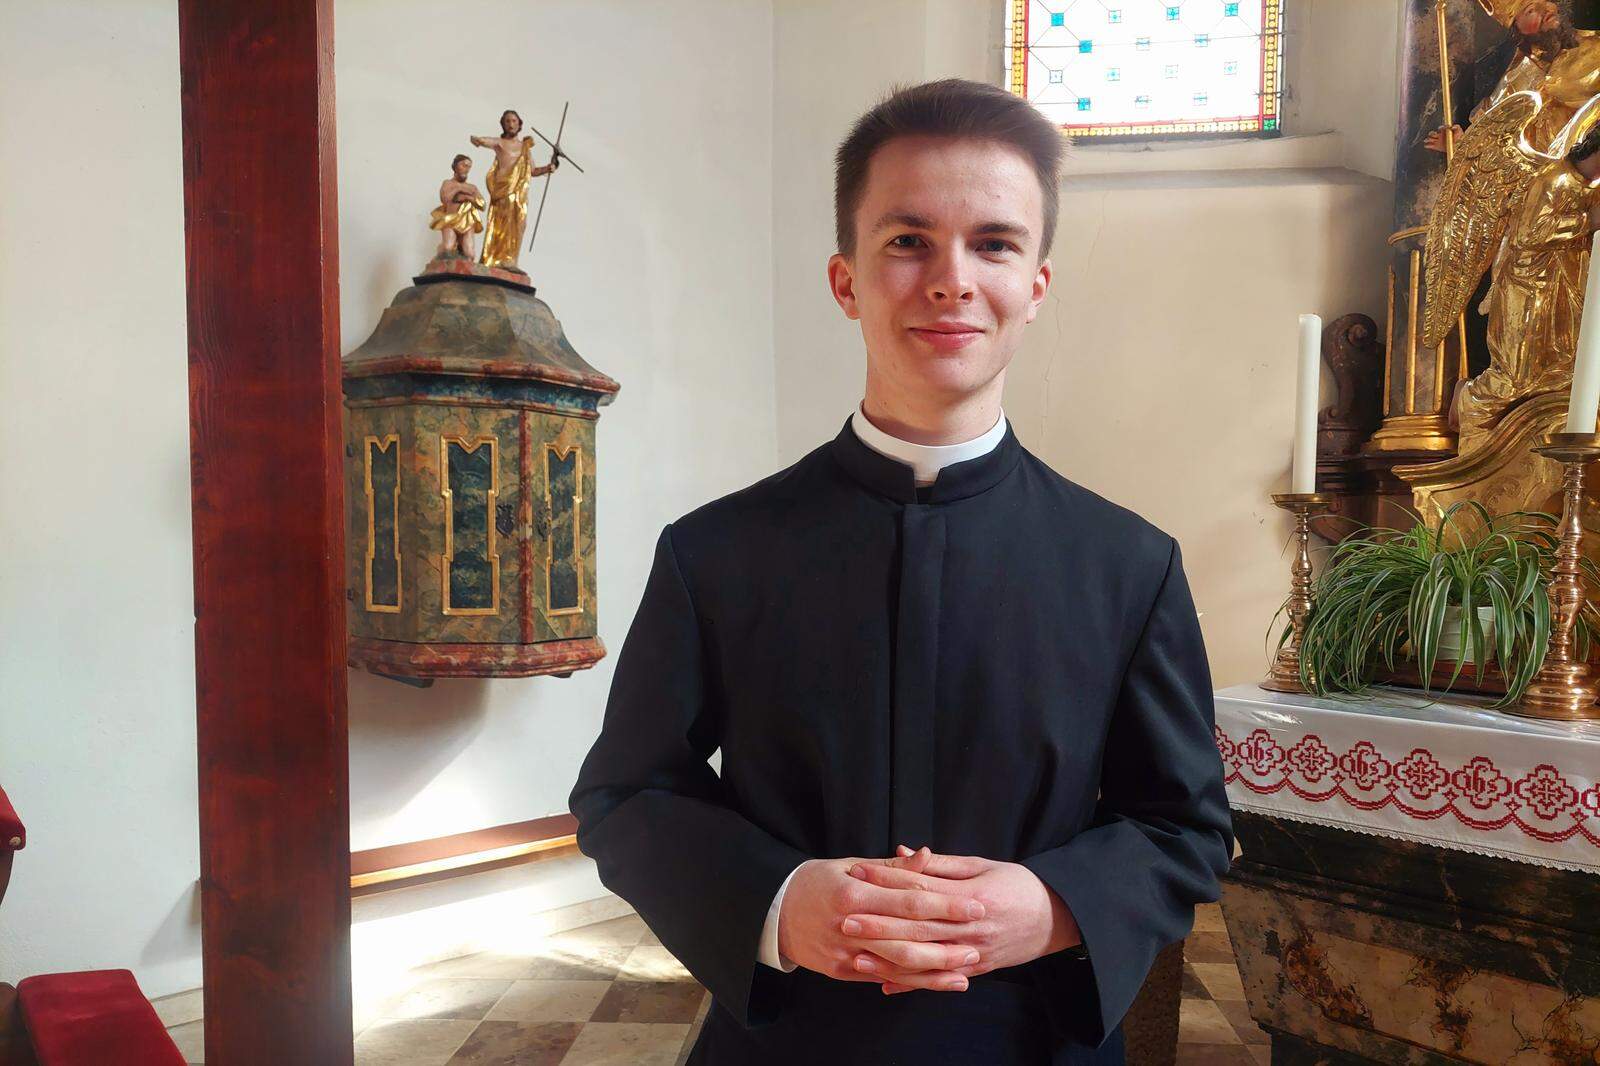 Paul Neumann, 21, möchte Priester werden